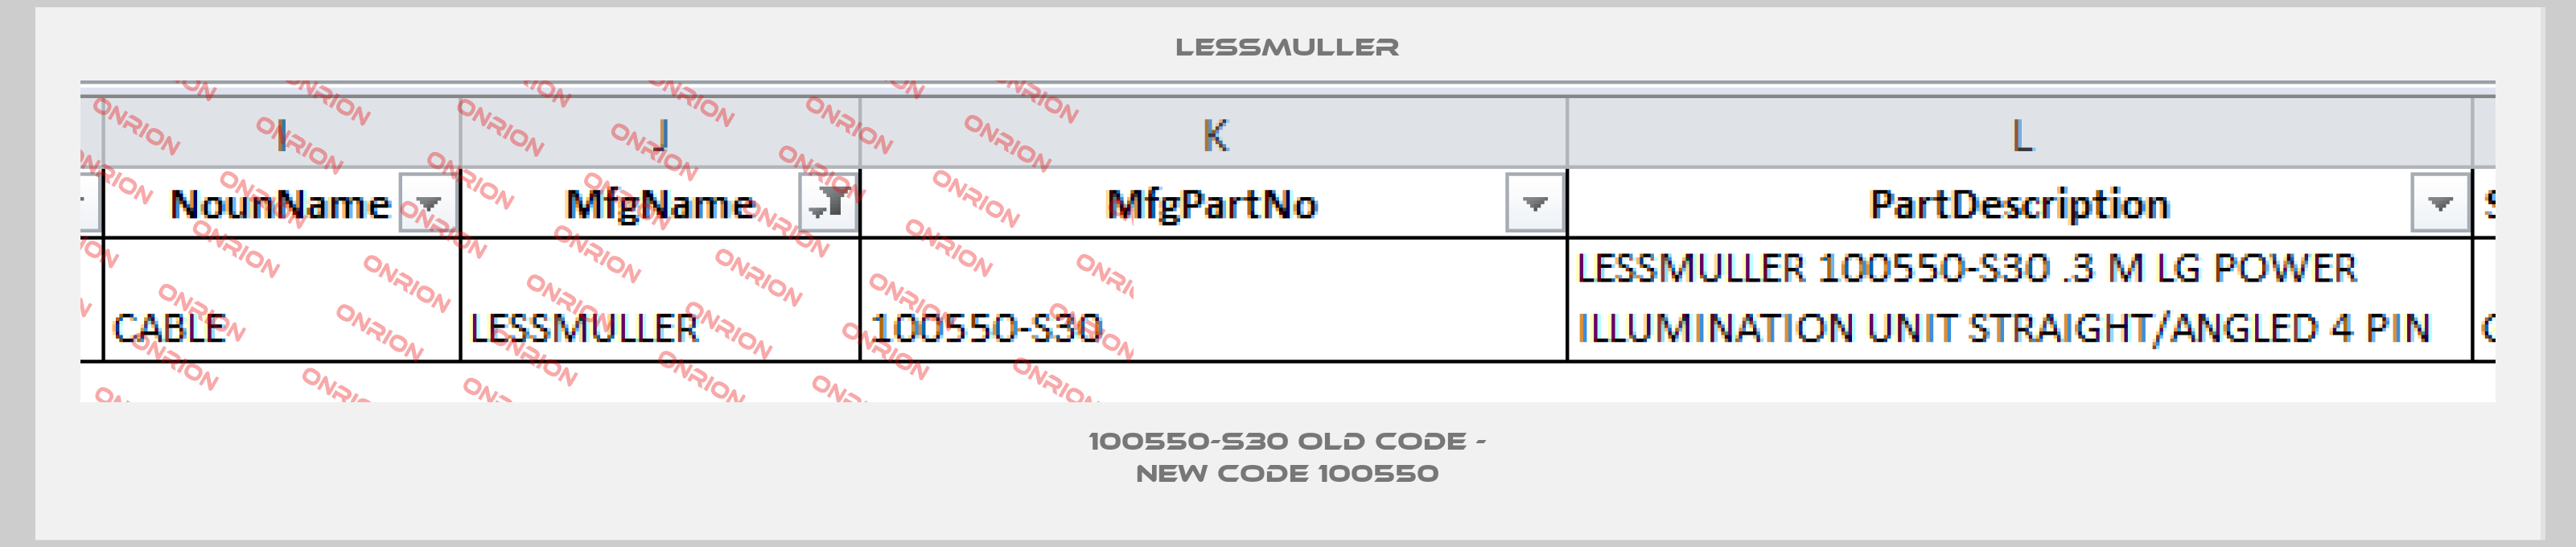 100550-S30 old code - new code 100550-big